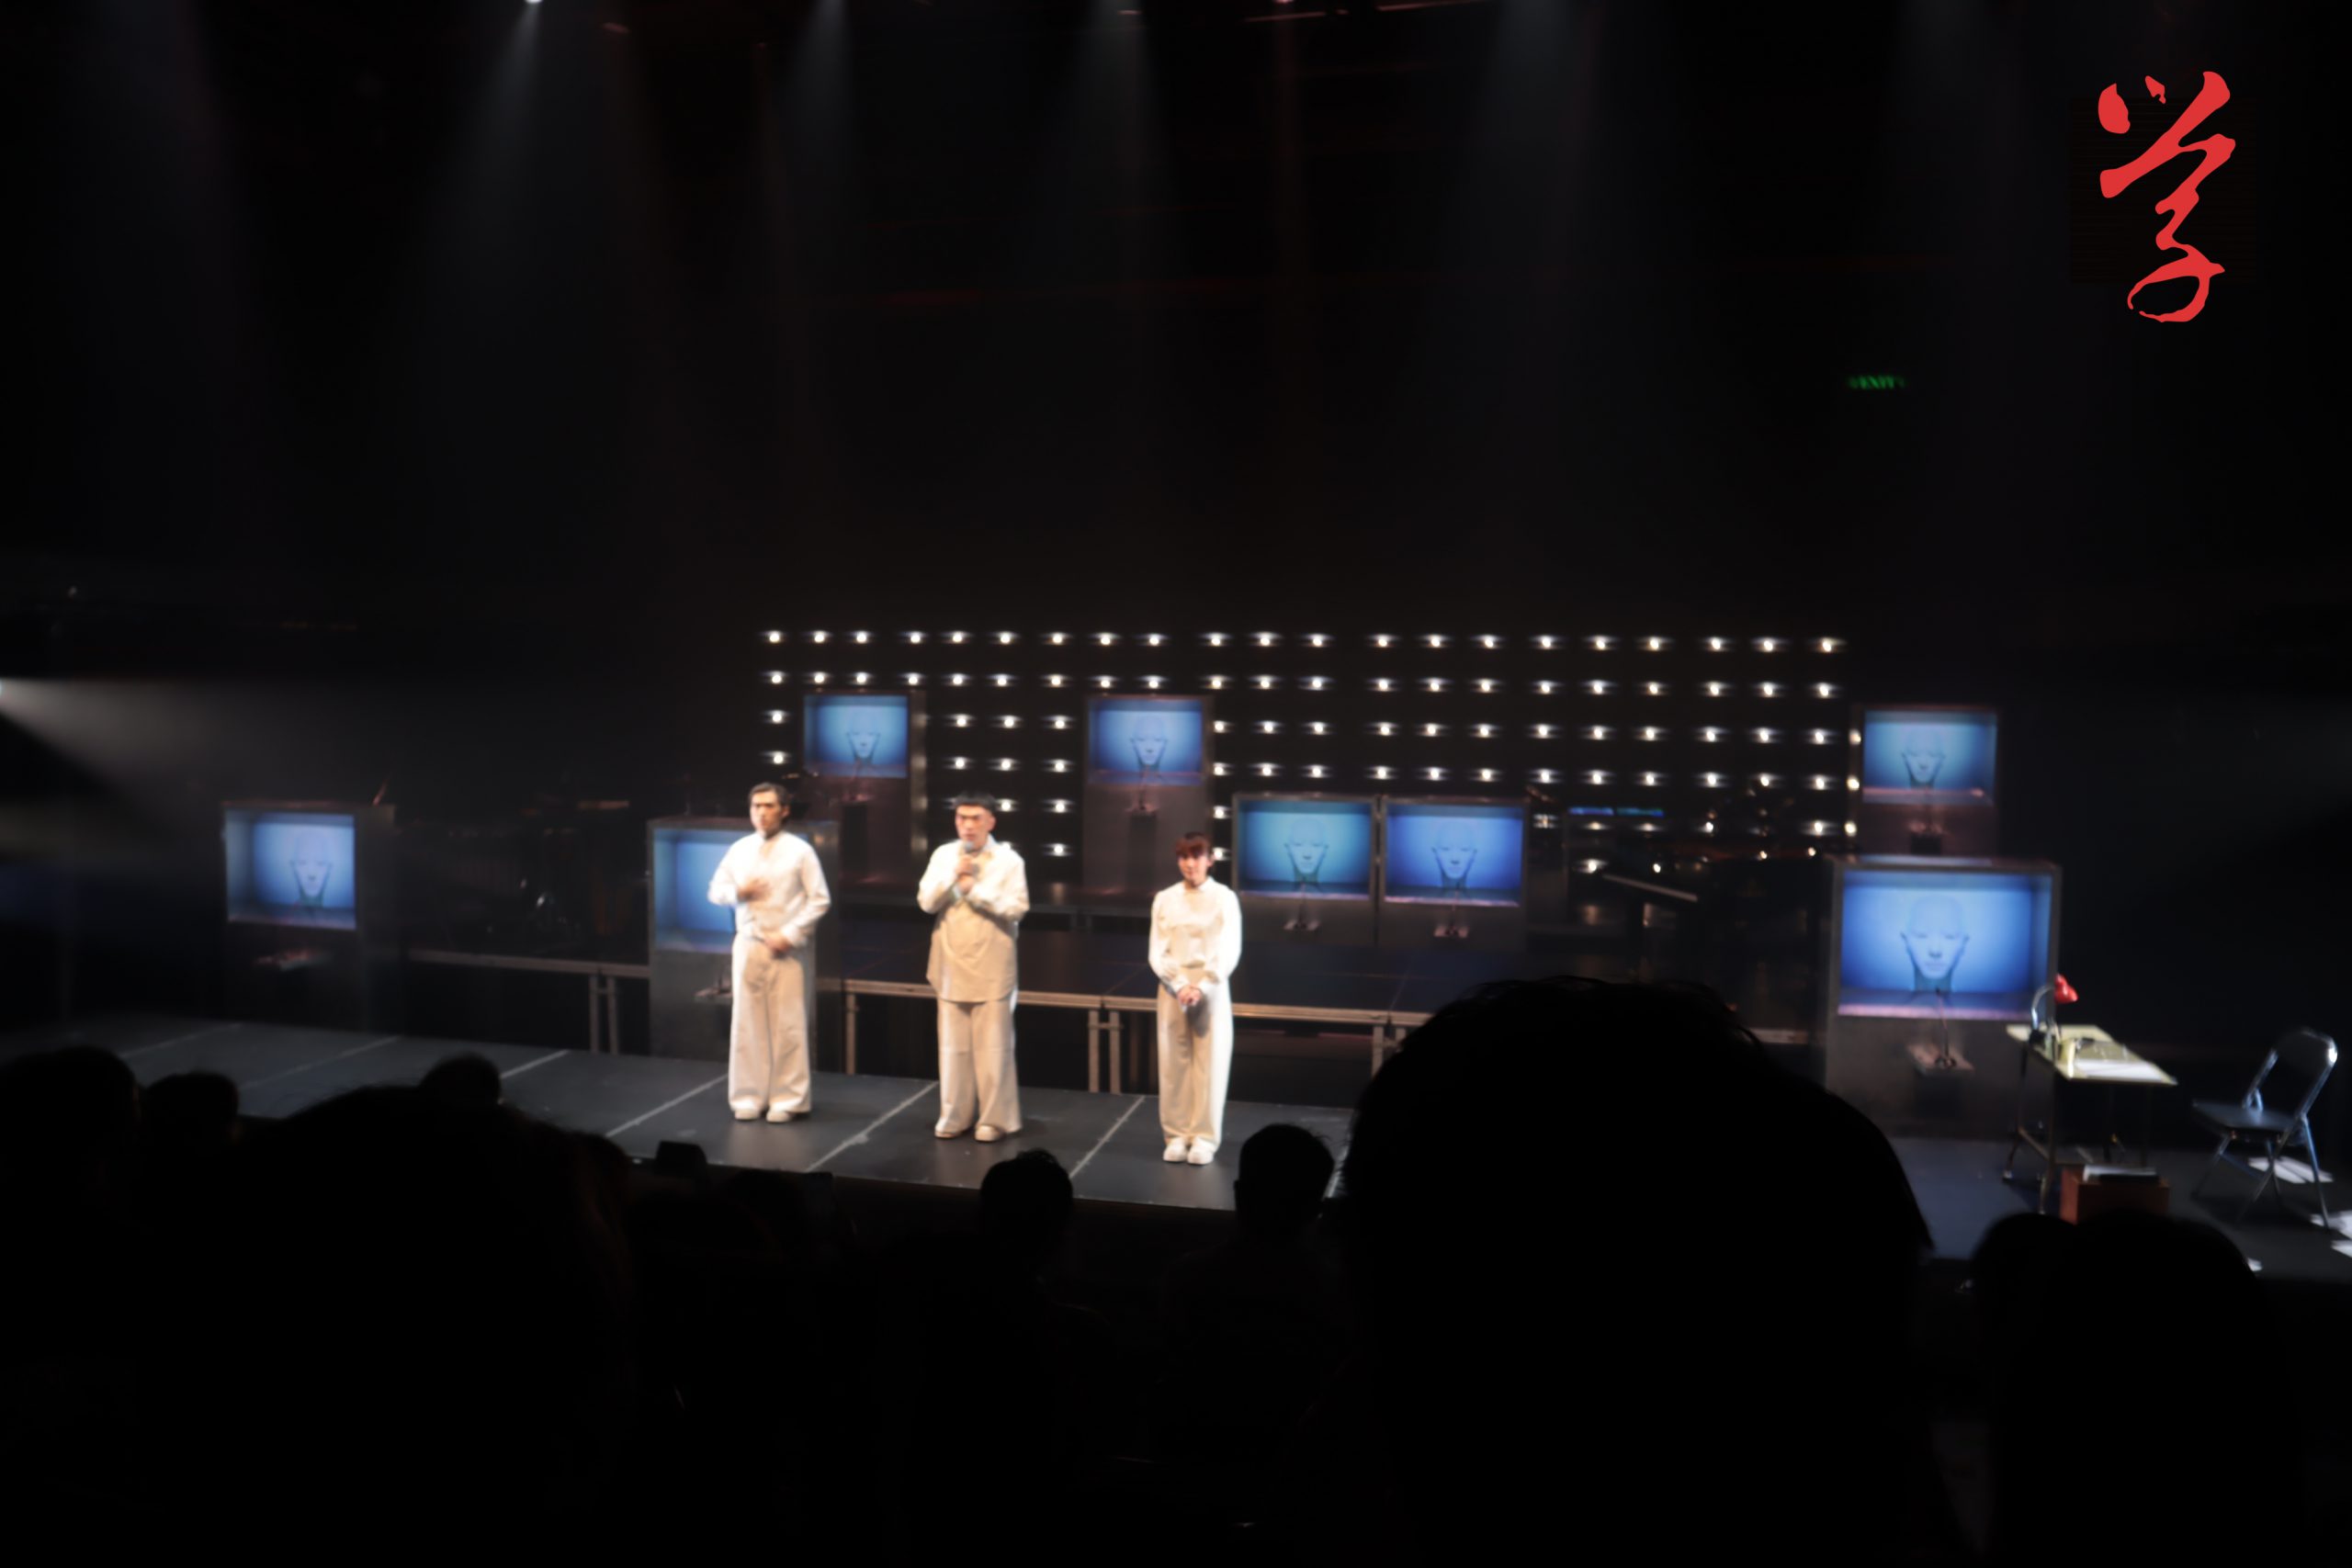 《人類協奏曲》表演現場有八塊顯示AI容貌的電子屏幕及三名表演者